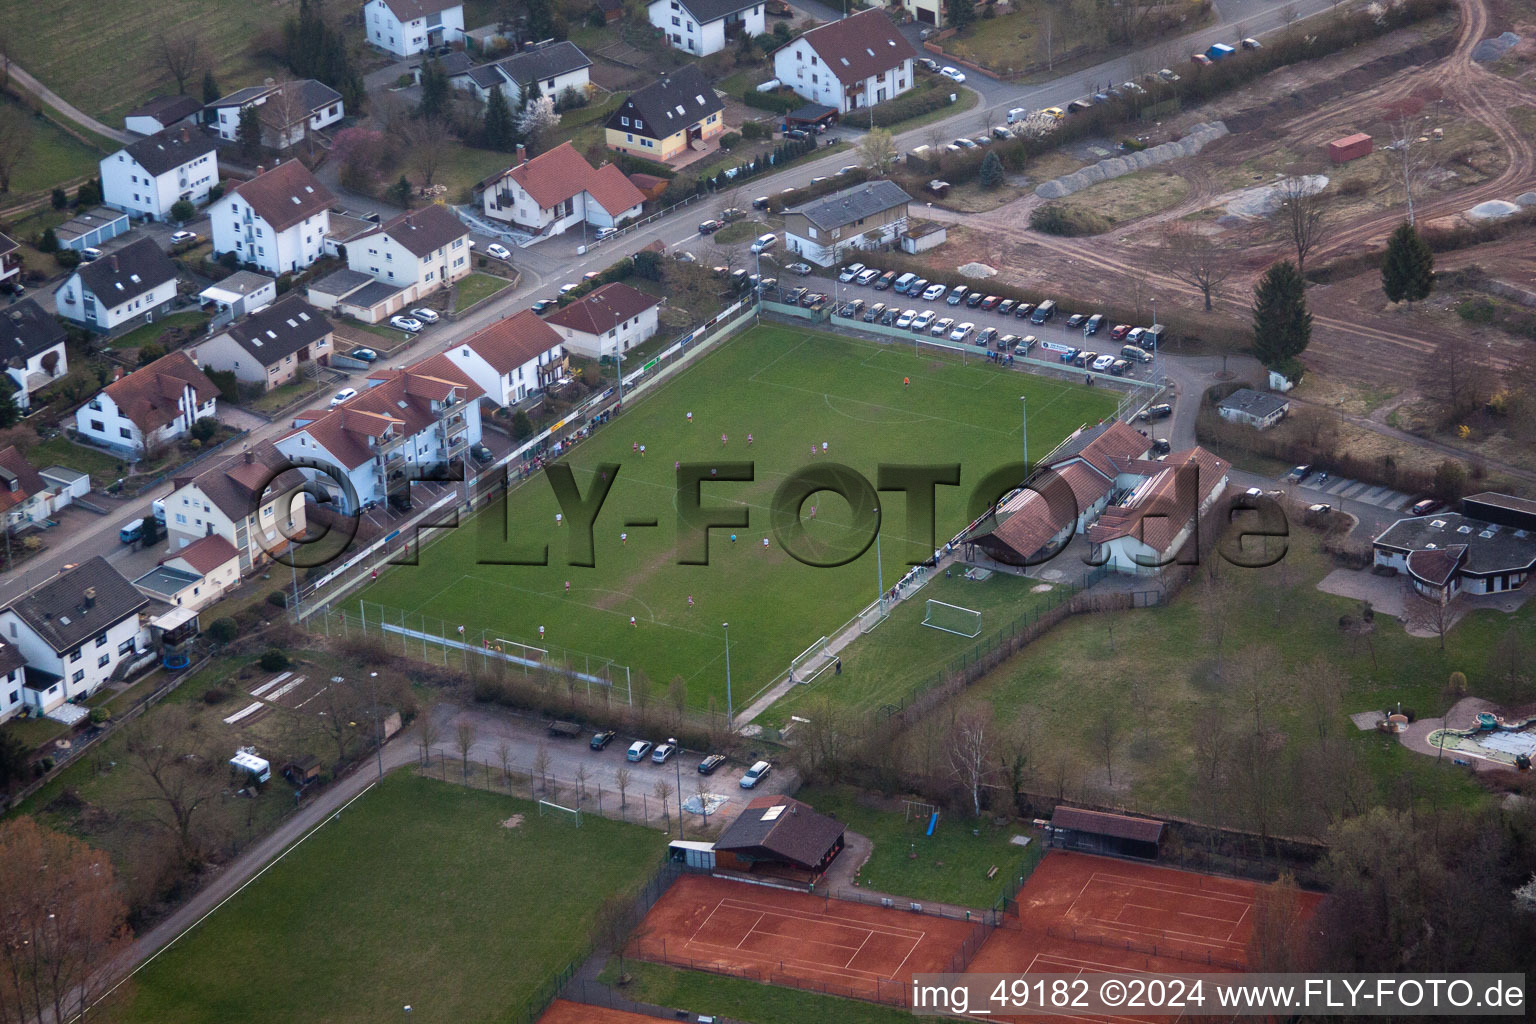 Terrains de sport à le quartier Ingenheim in Billigheim-Ingenheim dans le département Rhénanie-Palatinat, Allemagne d'en haut